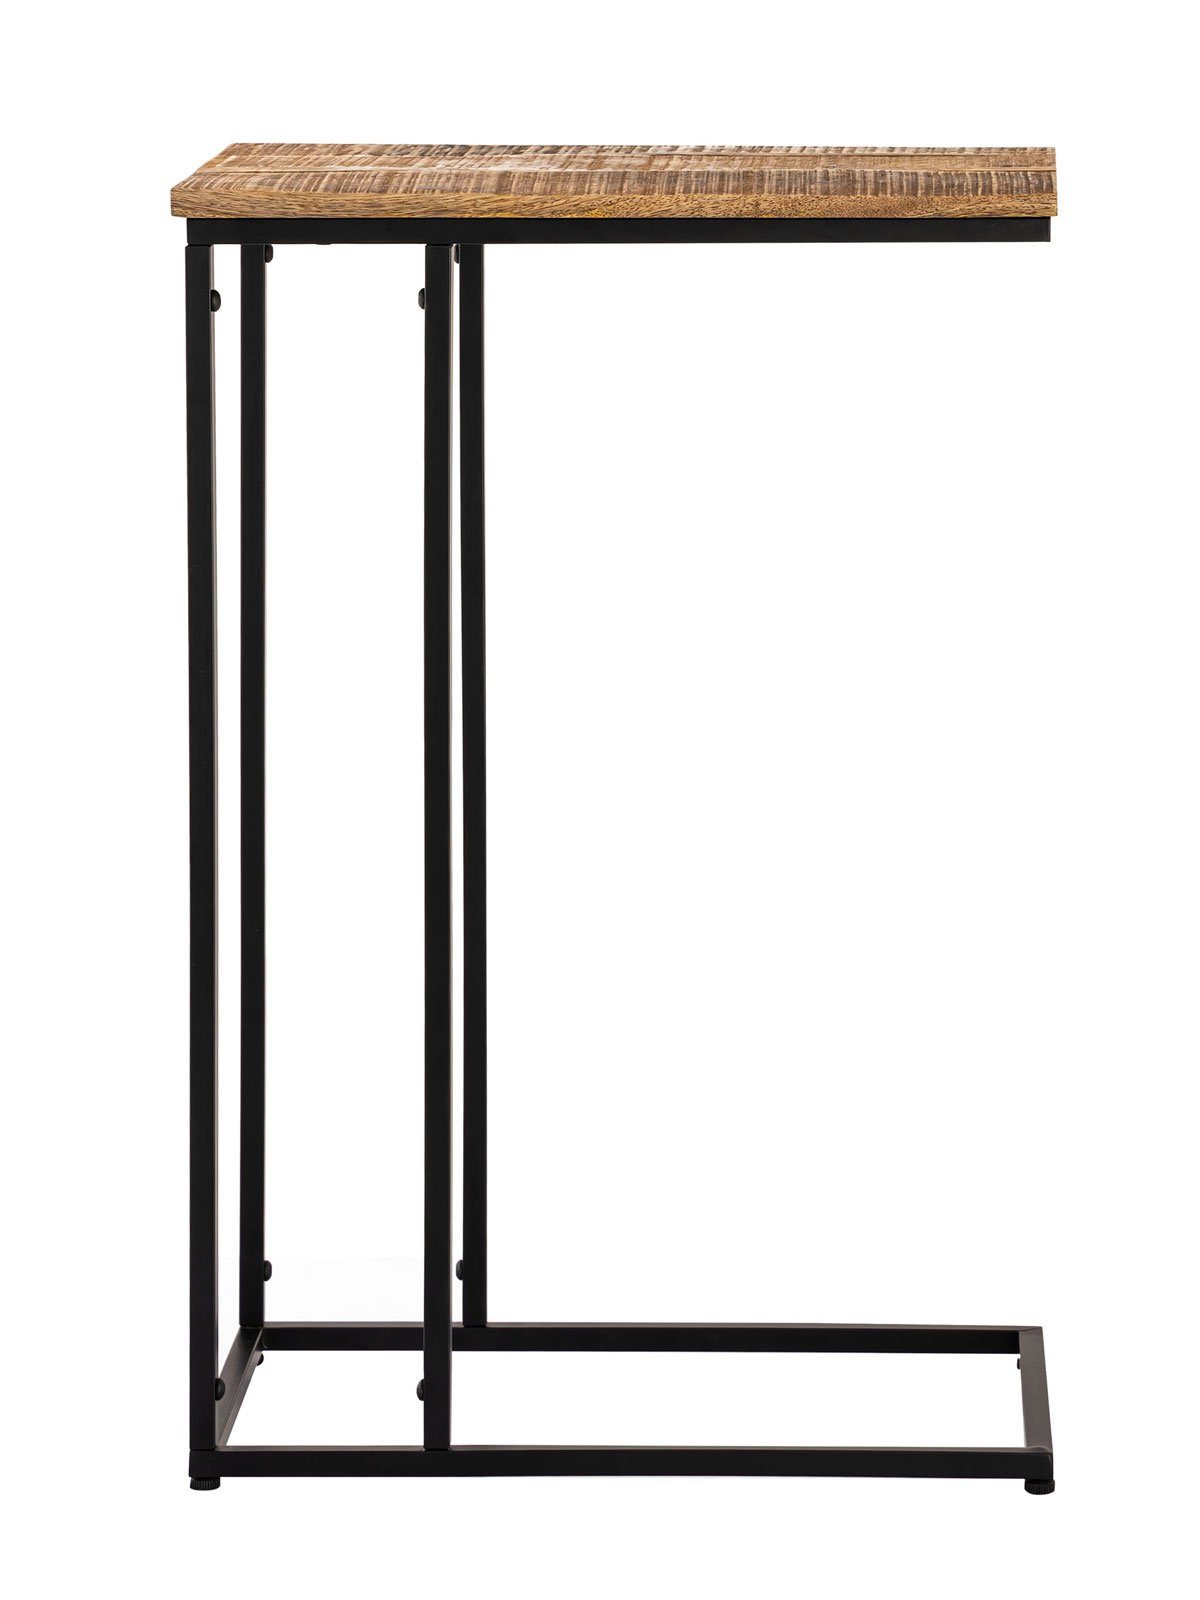 Minara Couchtisch Sofatisch nachhaltig Laptoptisch Beistelltisch Holz C-Tisch